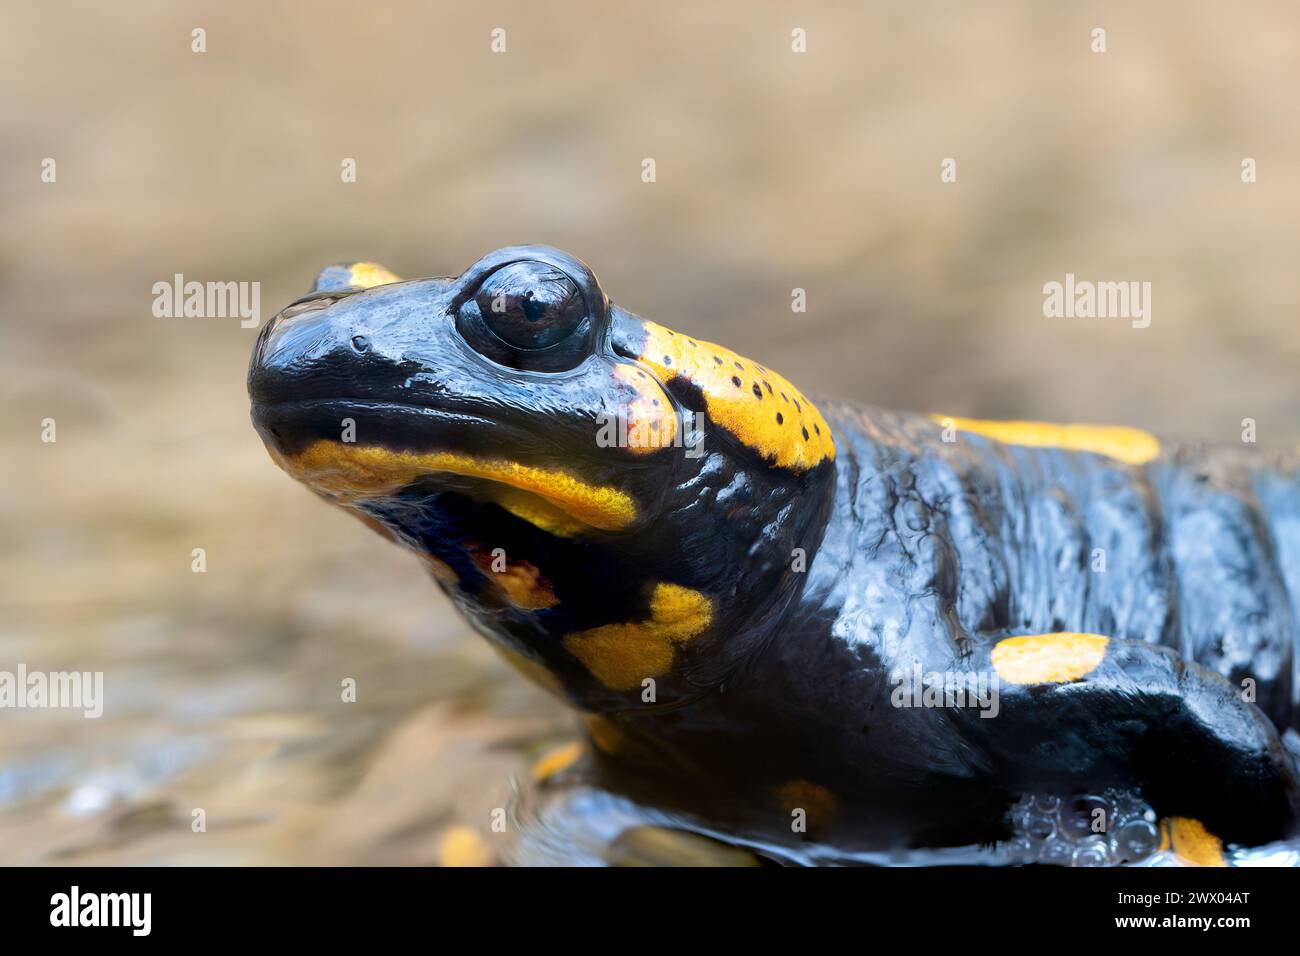 macro portrait of fire salamander (Salamandra salamandra) Stock Photo